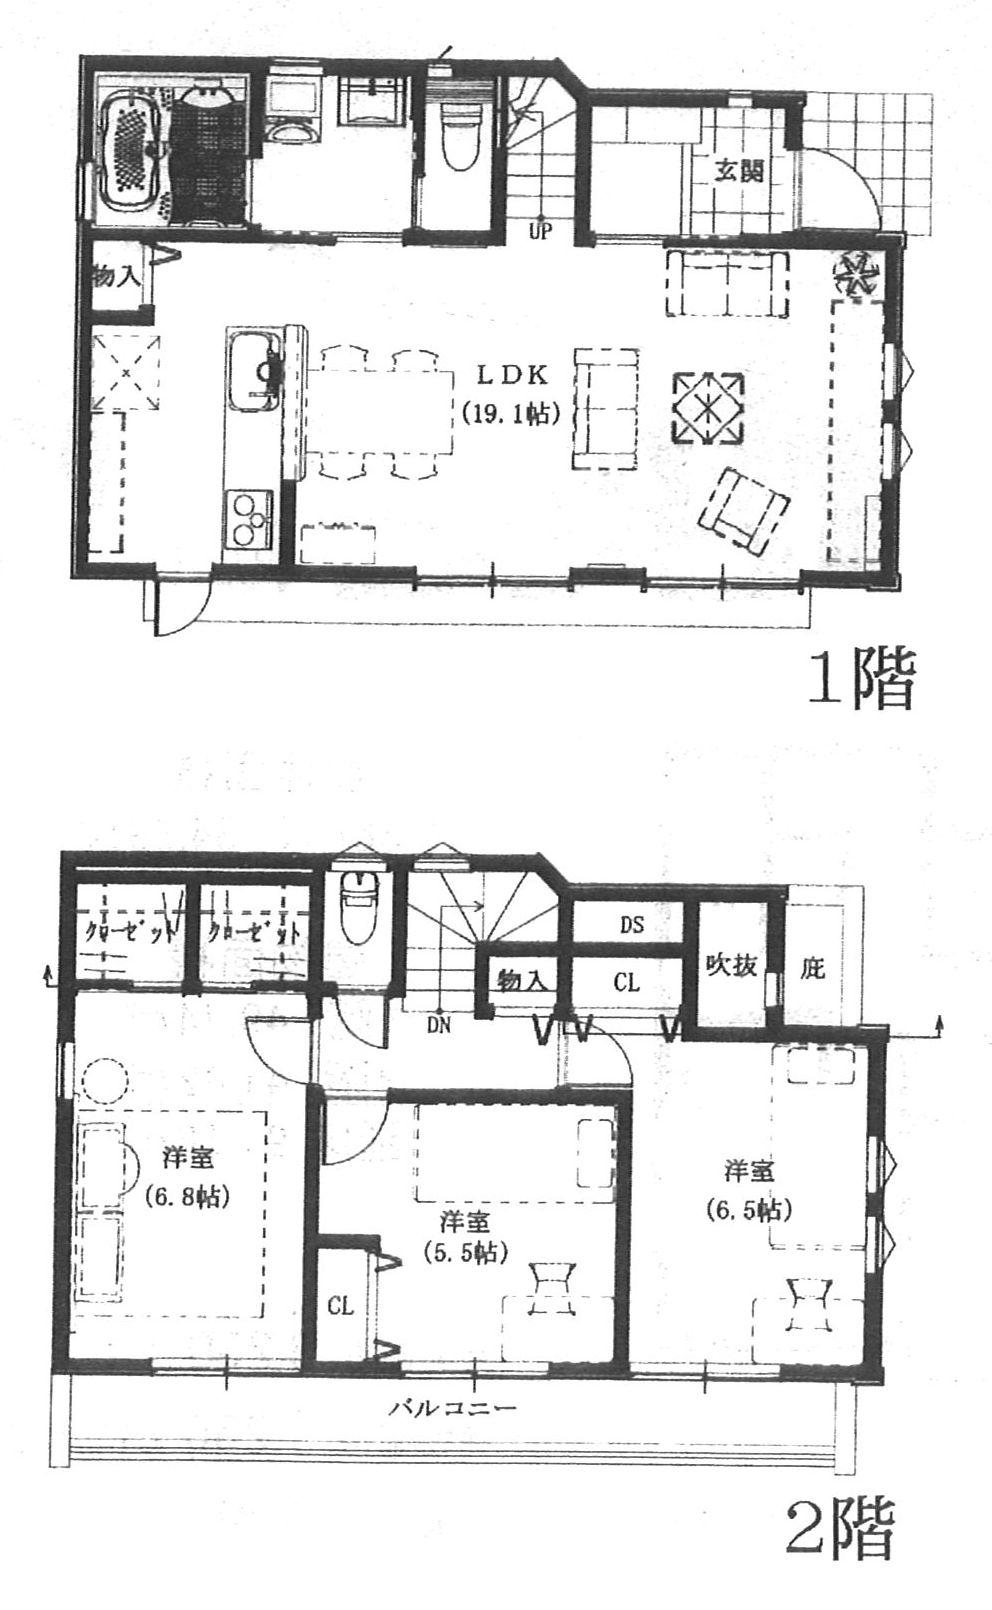 Floor plan. (A Building), Price 51,800,000 yen, 3LDK, Land area 108.37 sq m , Building area 86.68 sq m